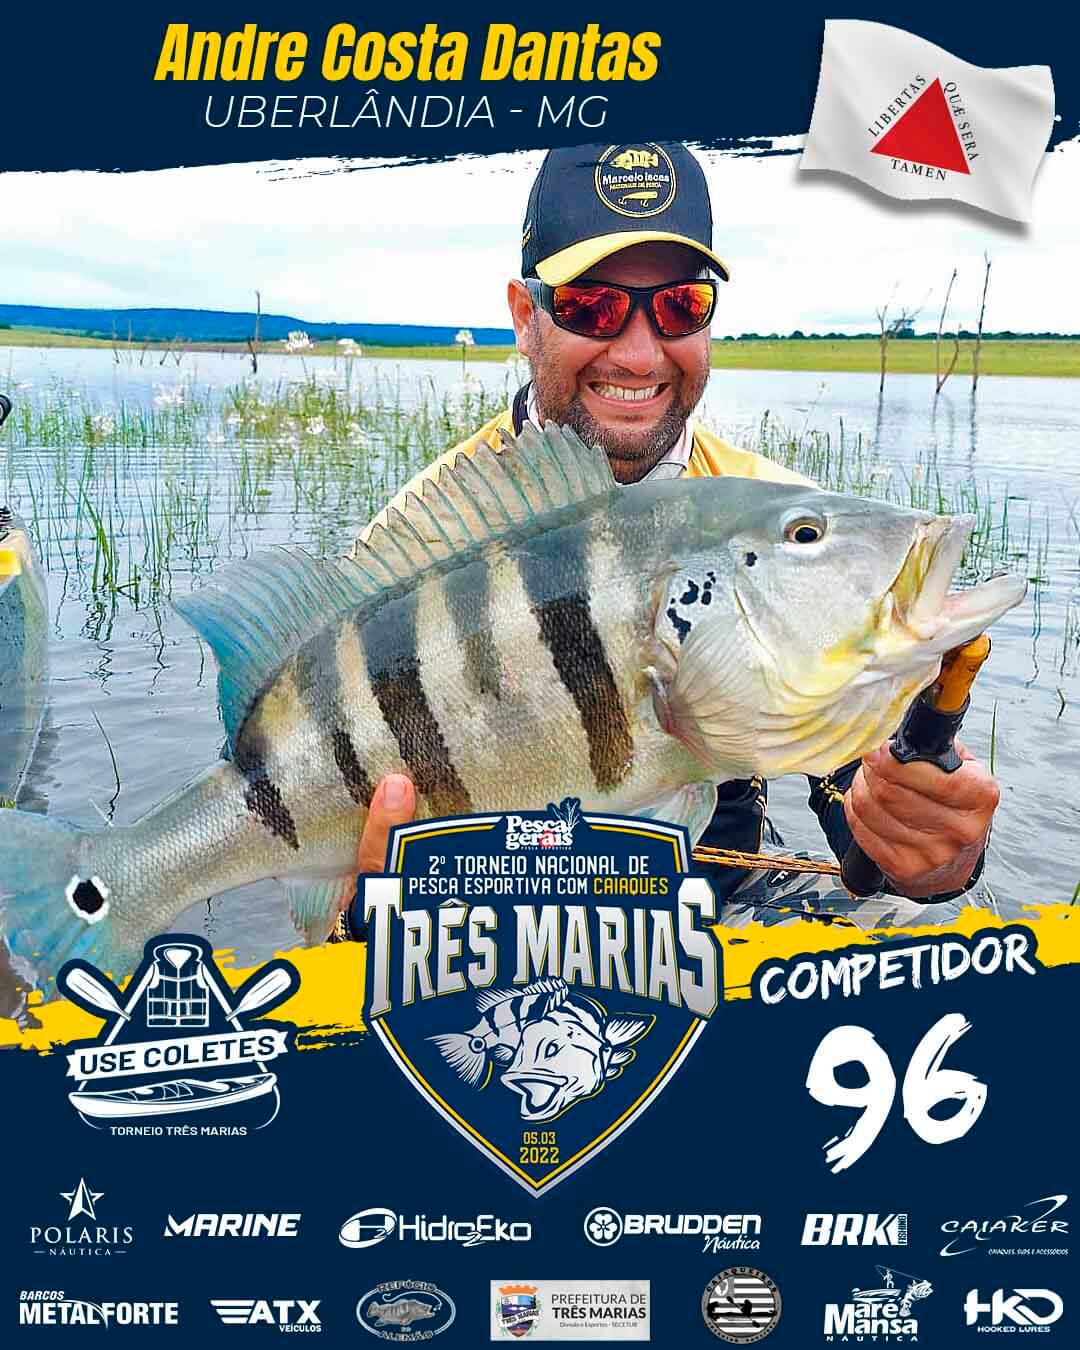 pescador Andre Costa Dantas